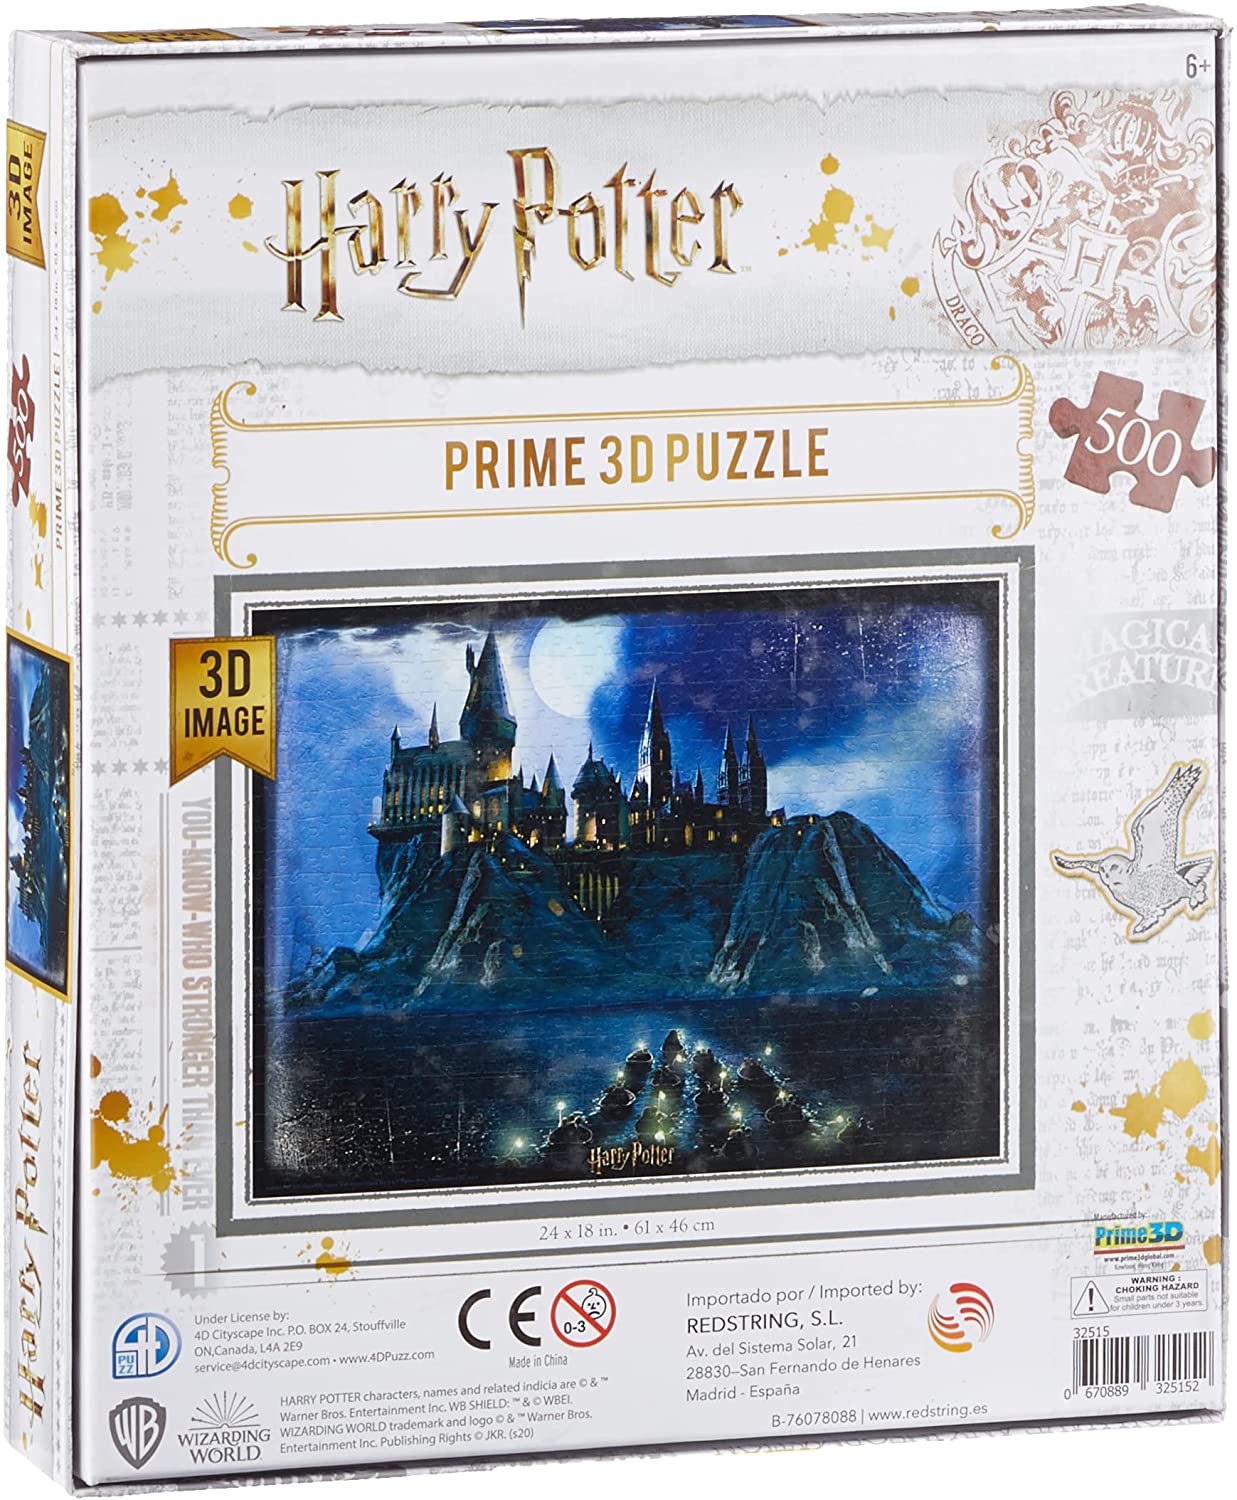 Harry Potter Prime 3D Puzzle | 3D Image | 500 Pieces